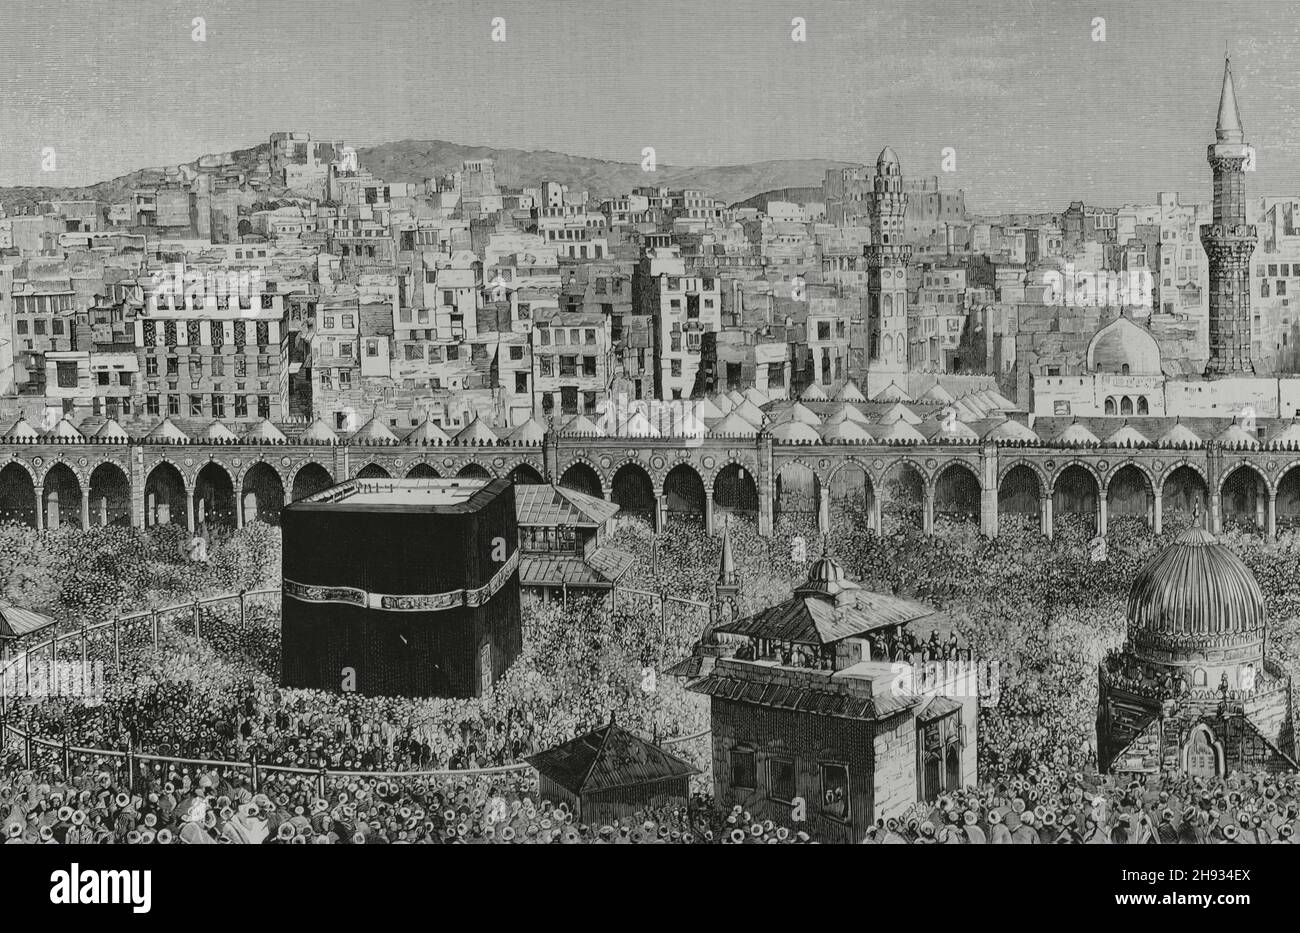 Arabia Saudita, La Meca. Vista general de la ciudad. En el centro de la mezquita de al-Masjid al-Haram, la Kaaba, que alberga la 'Piedra Negra. Grabado. Detalle. La Ilustración Española y Americana, 1882. Foto de stock